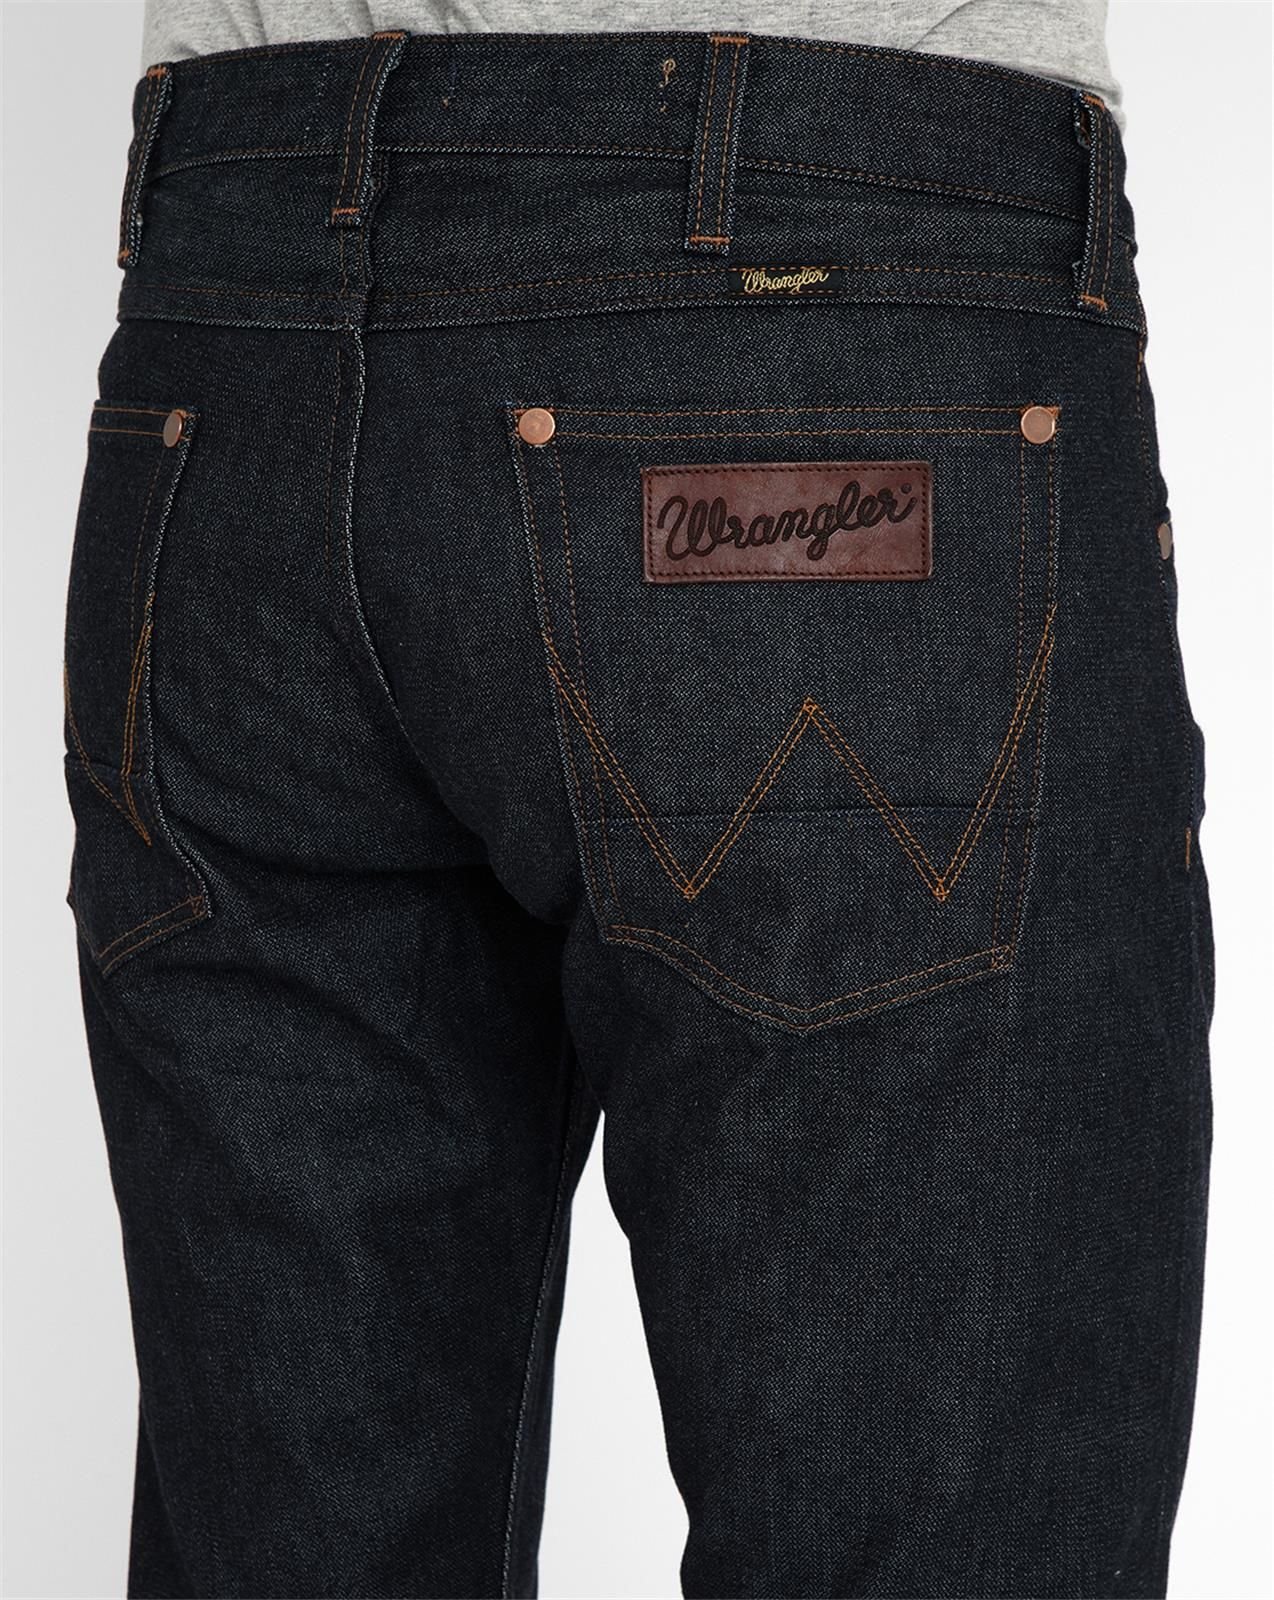 wrangler selvedge jeans